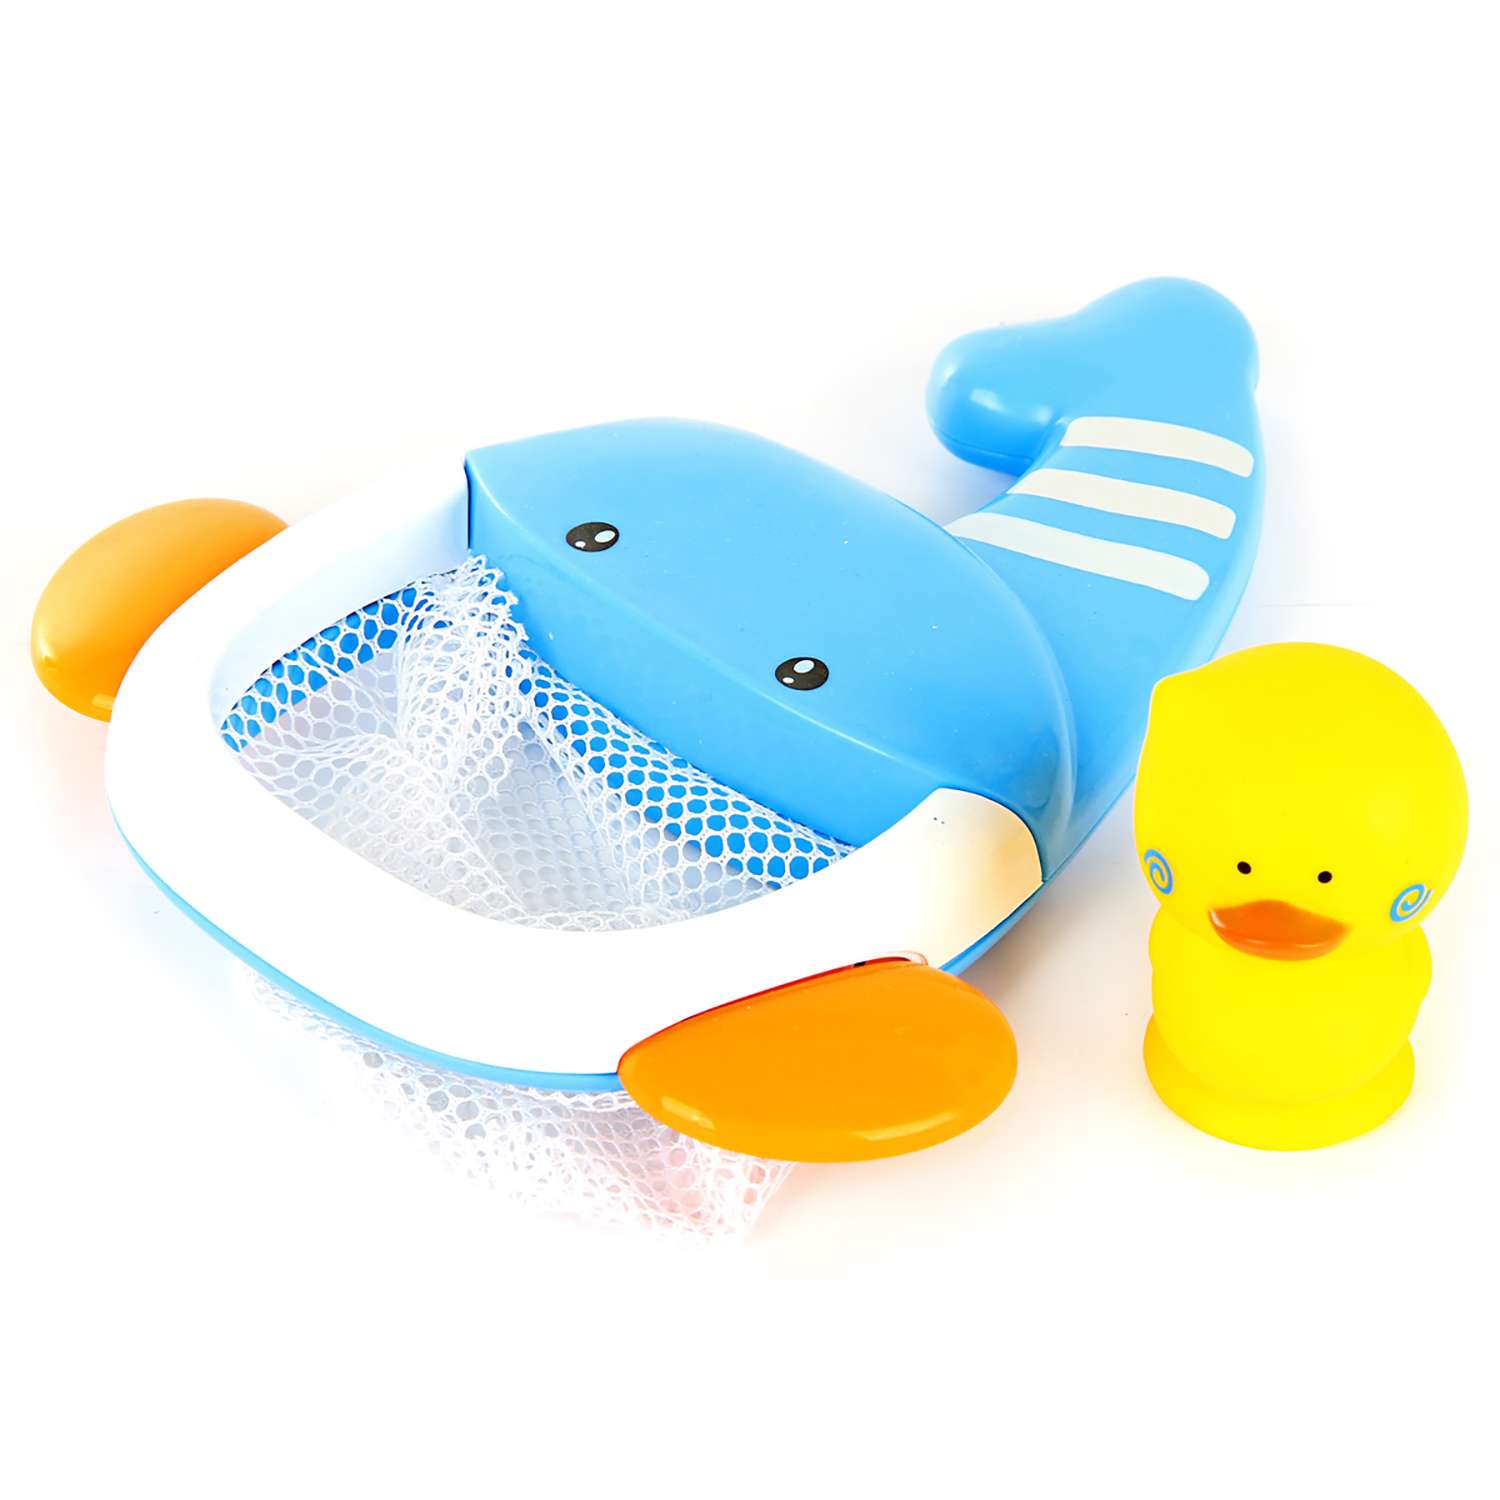 Игрушки для ванной Ути Пути развивающие игрушки рыбка утенок - фото 1